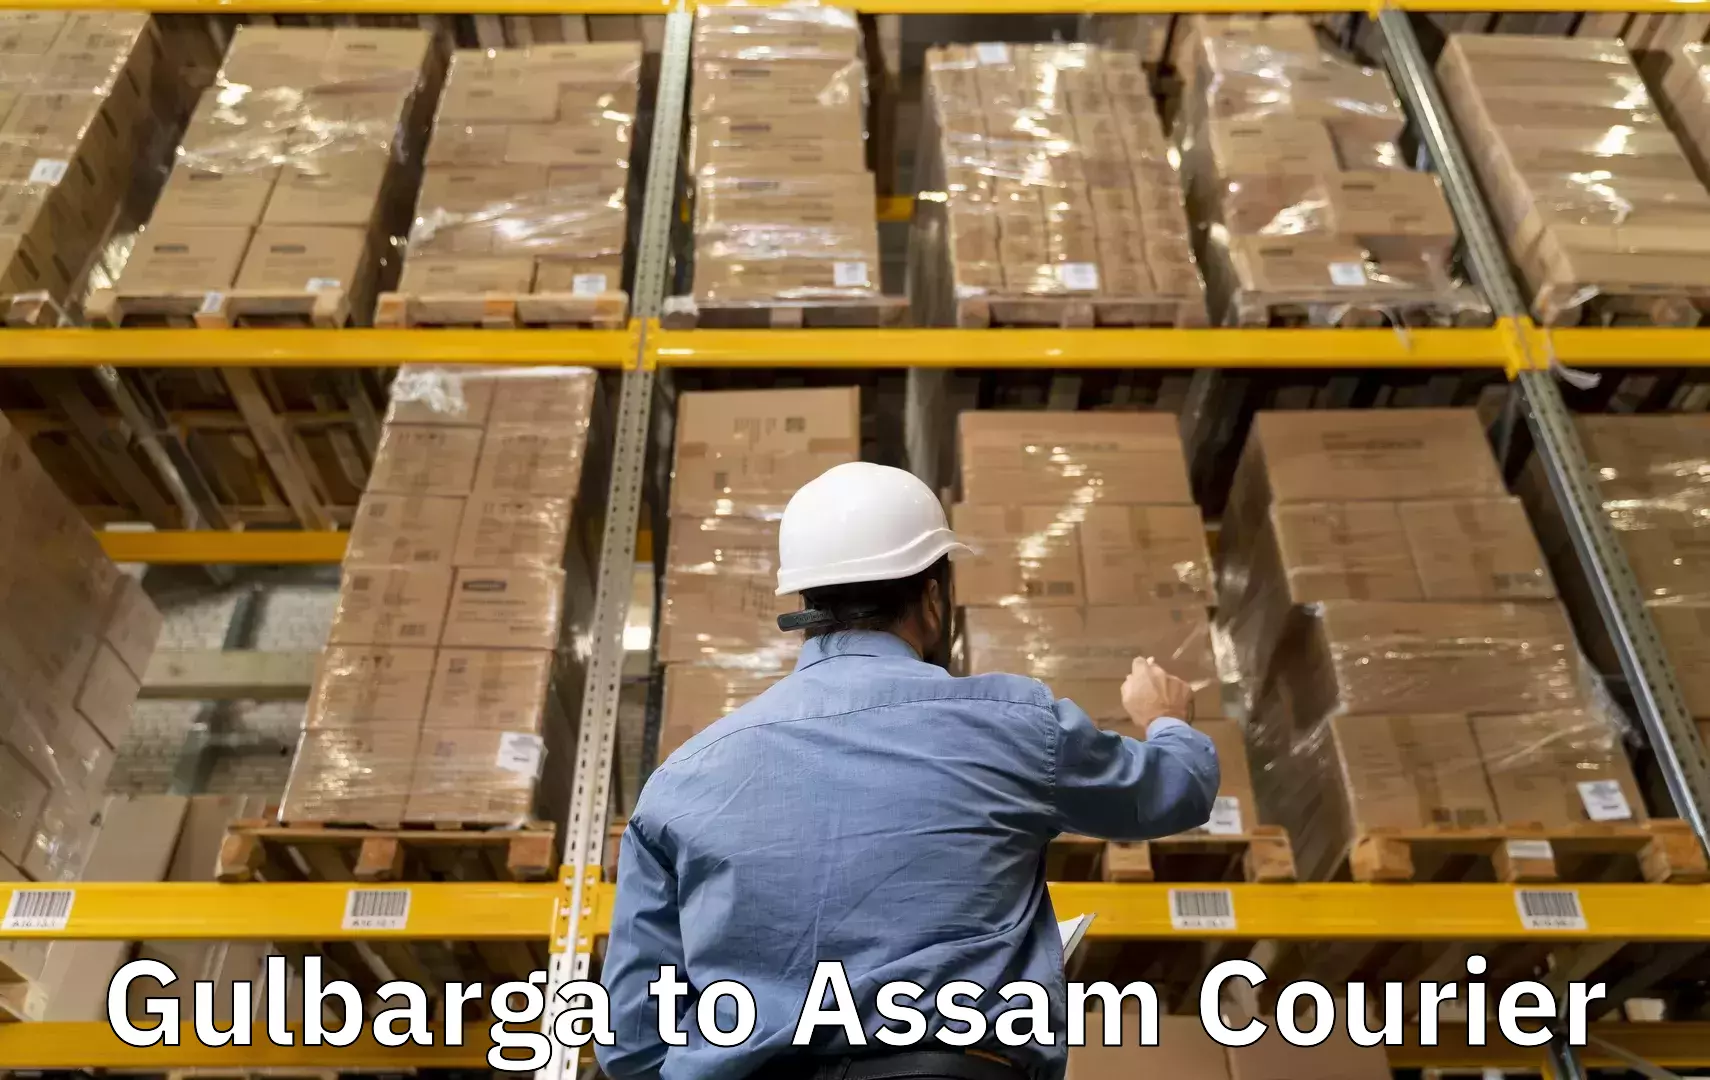 Luggage transport company Gulbarga to Baksha Bodoland